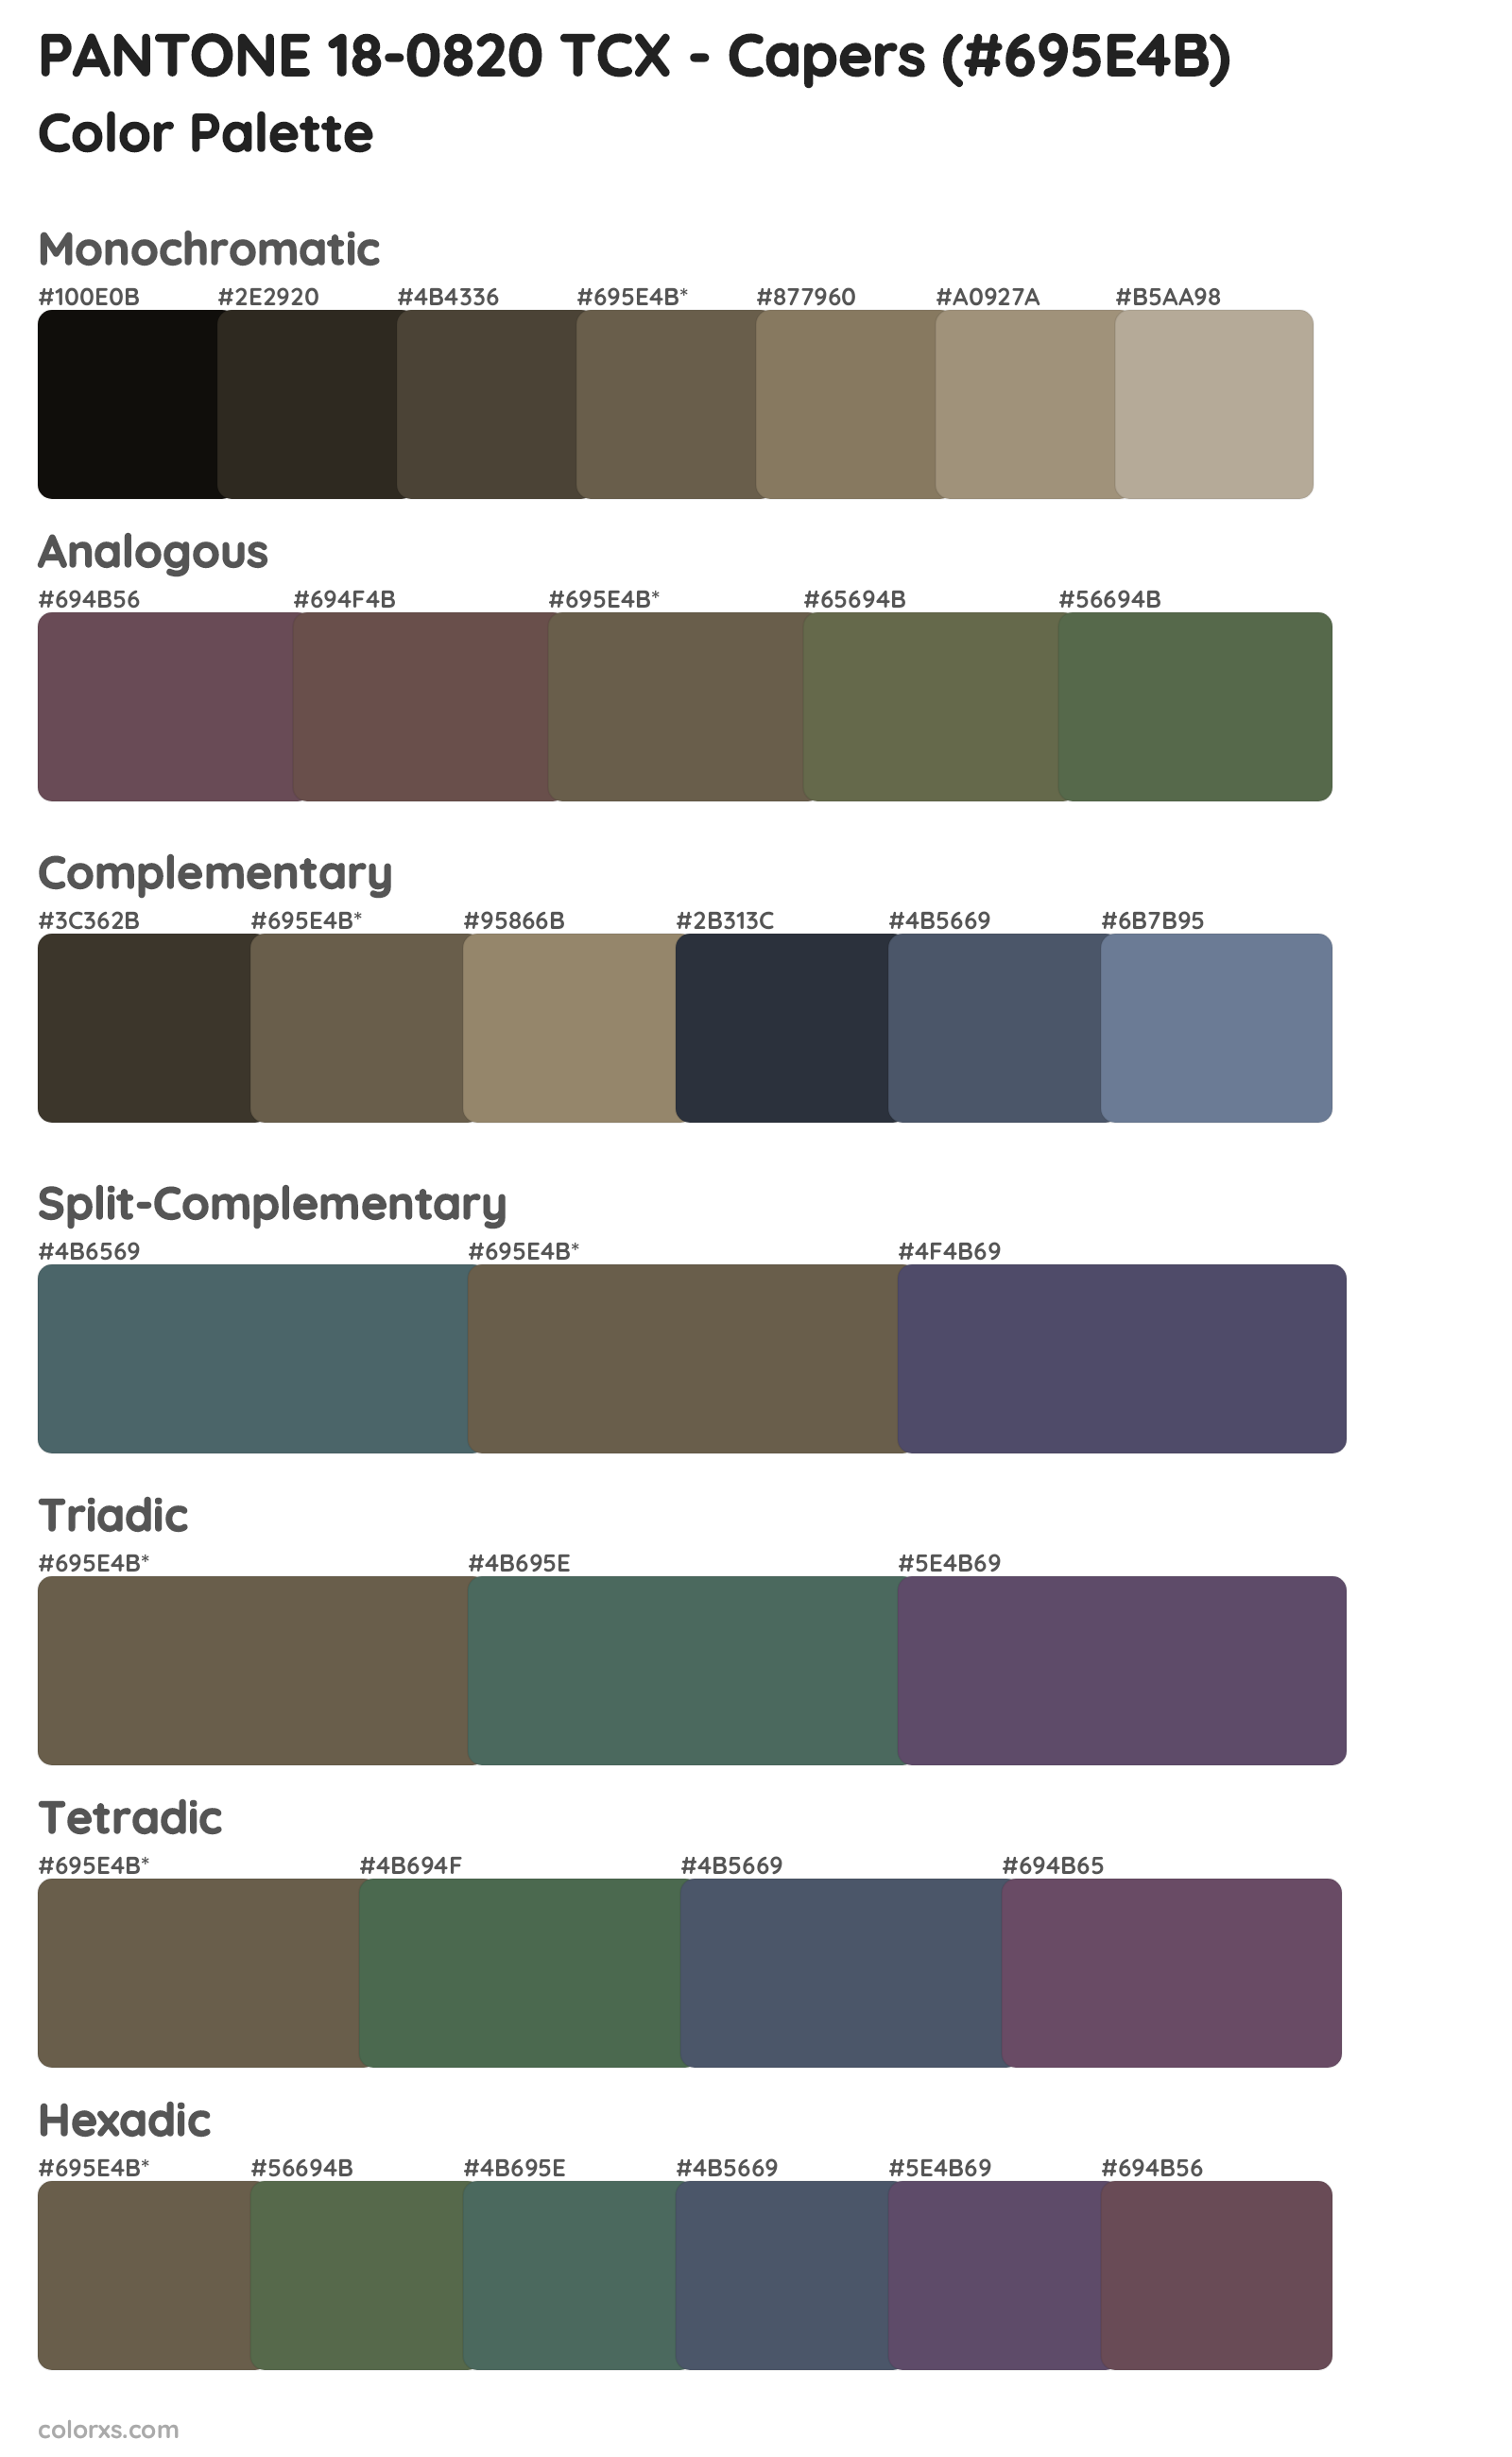 PANTONE 18-0820 TCX - Capers Color Scheme Palettes